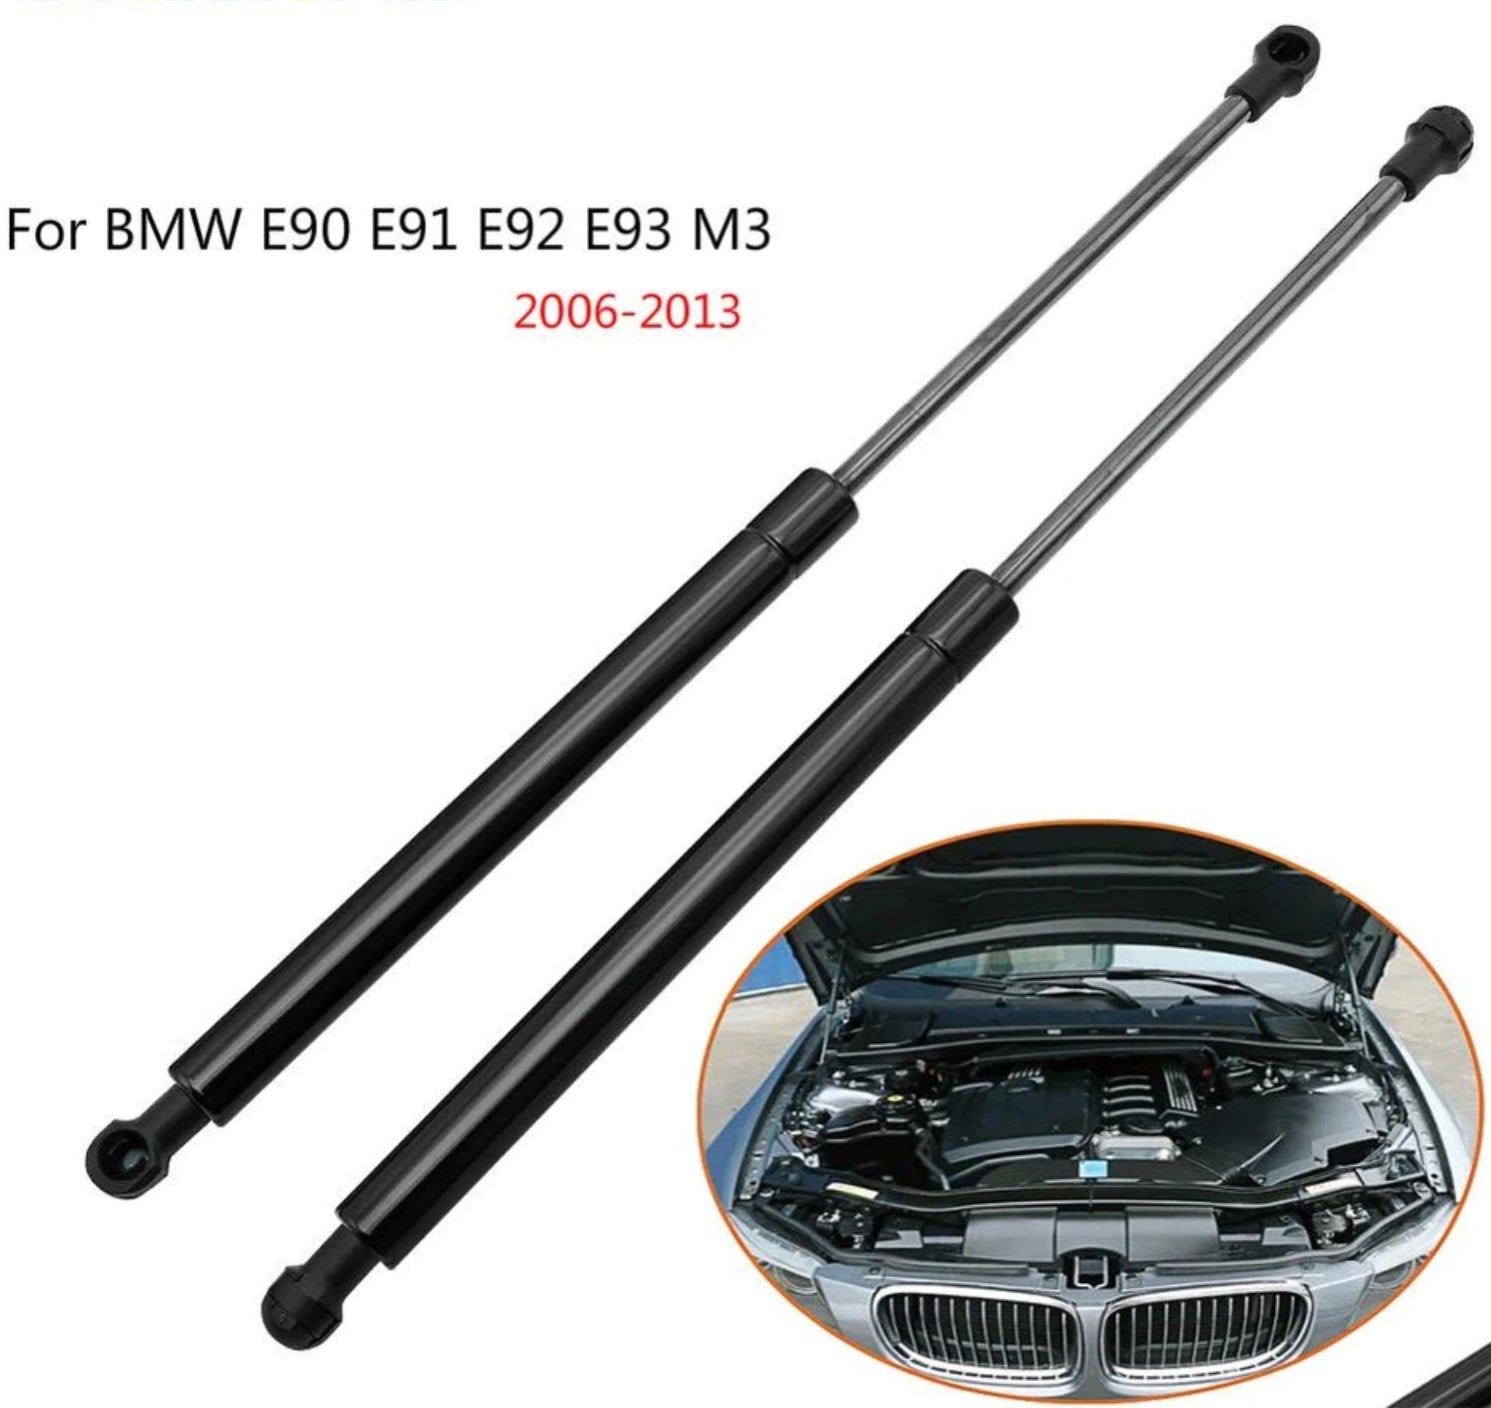 2 x OEM STABILUS 4B-9669ZC Stabilus Bonnet Struts Hood Lift Gas Shock Support Suit For BMW 3 Series E90 E91 E92 E93 2005-2013